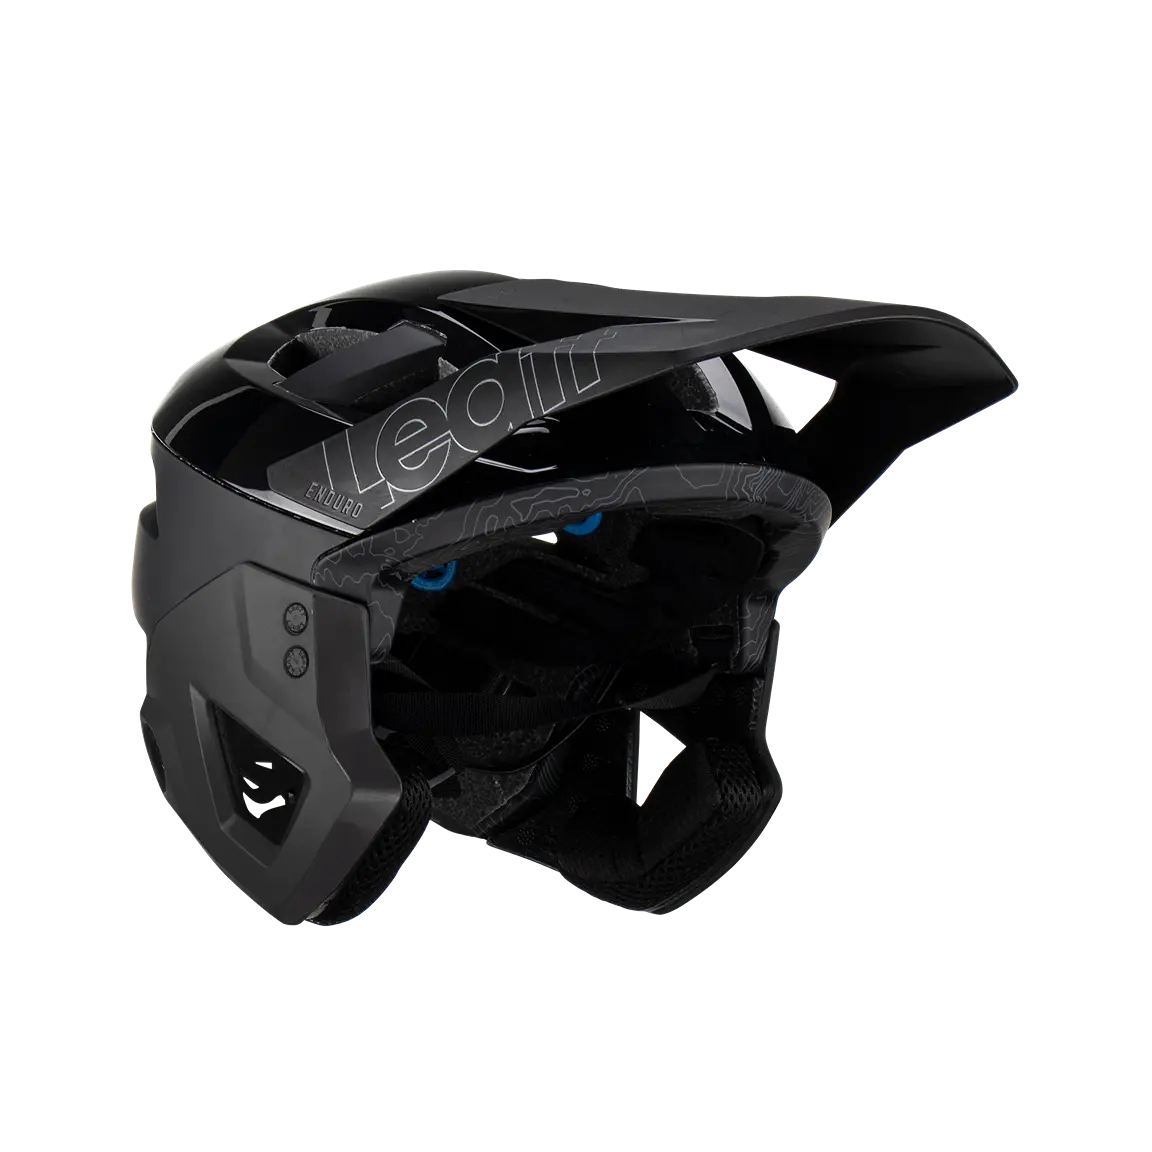 LEATT MTB Enduro 3.0 Helmet - V23 Stealth